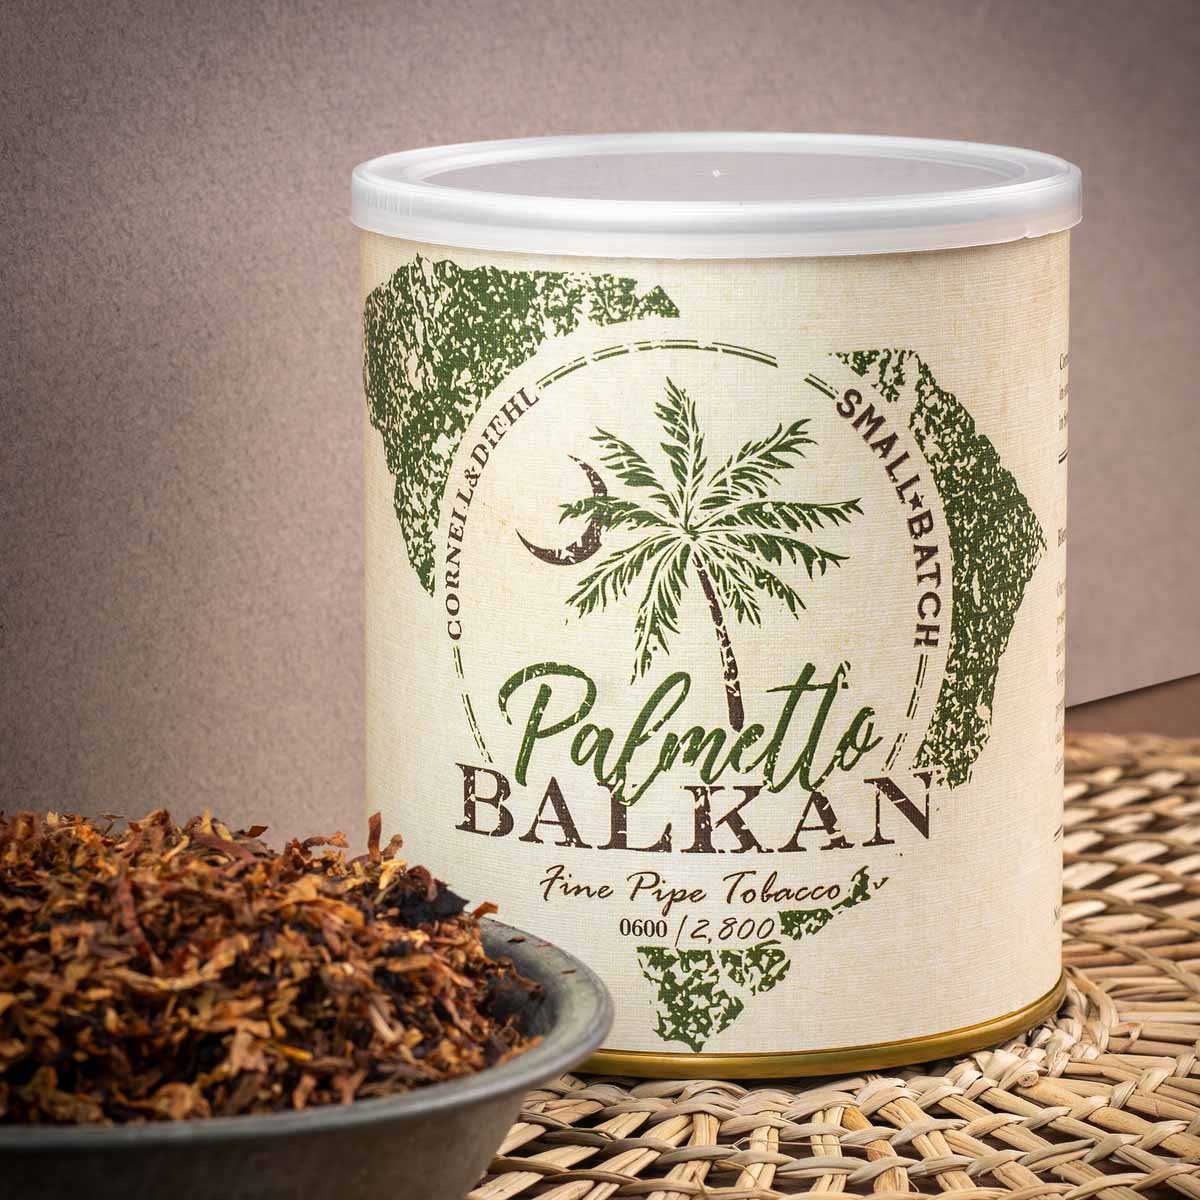 Cornell & Diehl Small Batch Palmetto Balkan Premium Pipe Tobacco